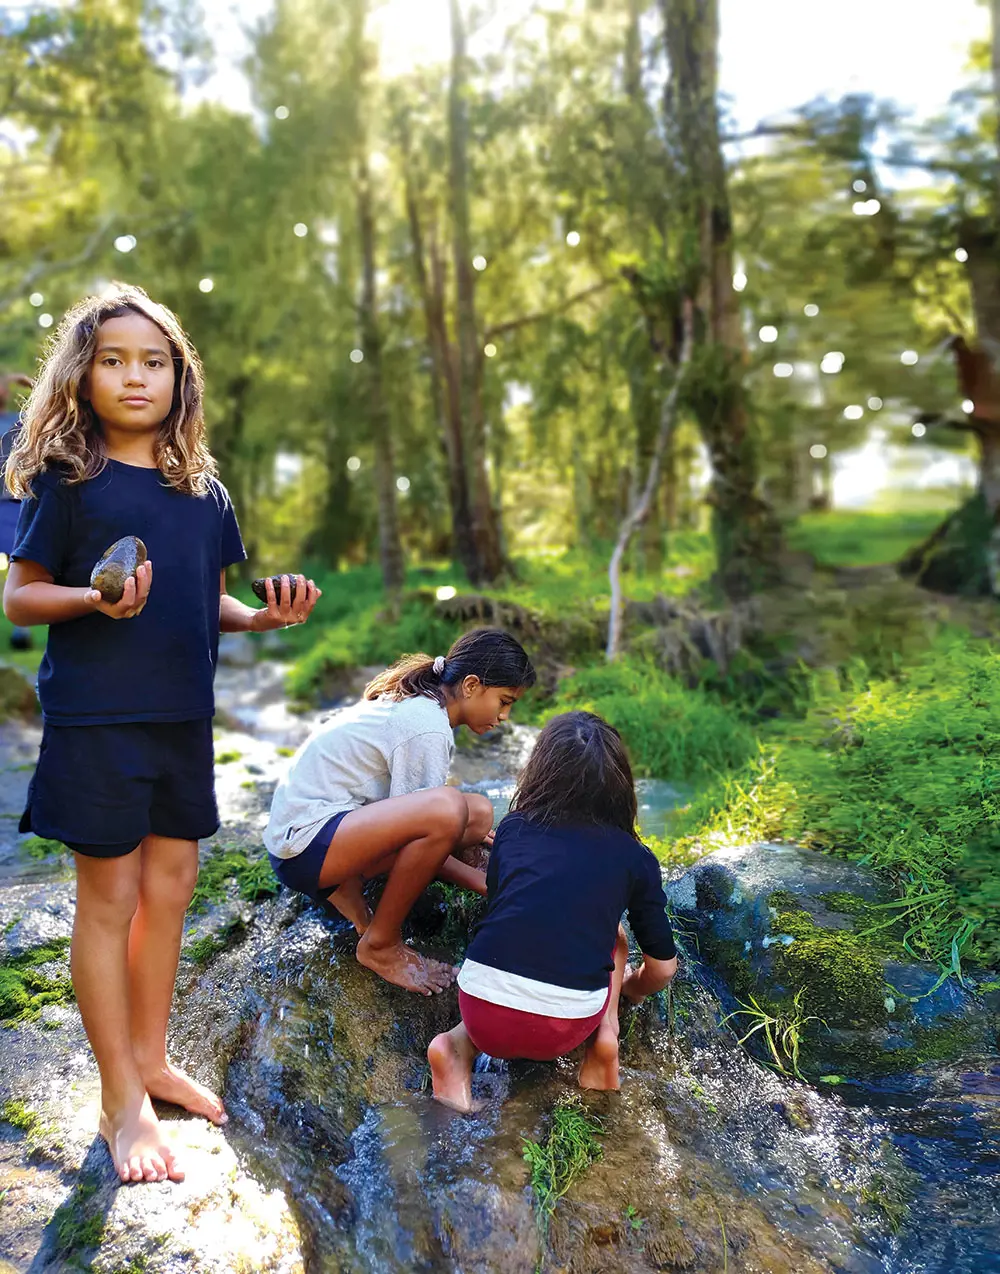 Children by freshwater stream.